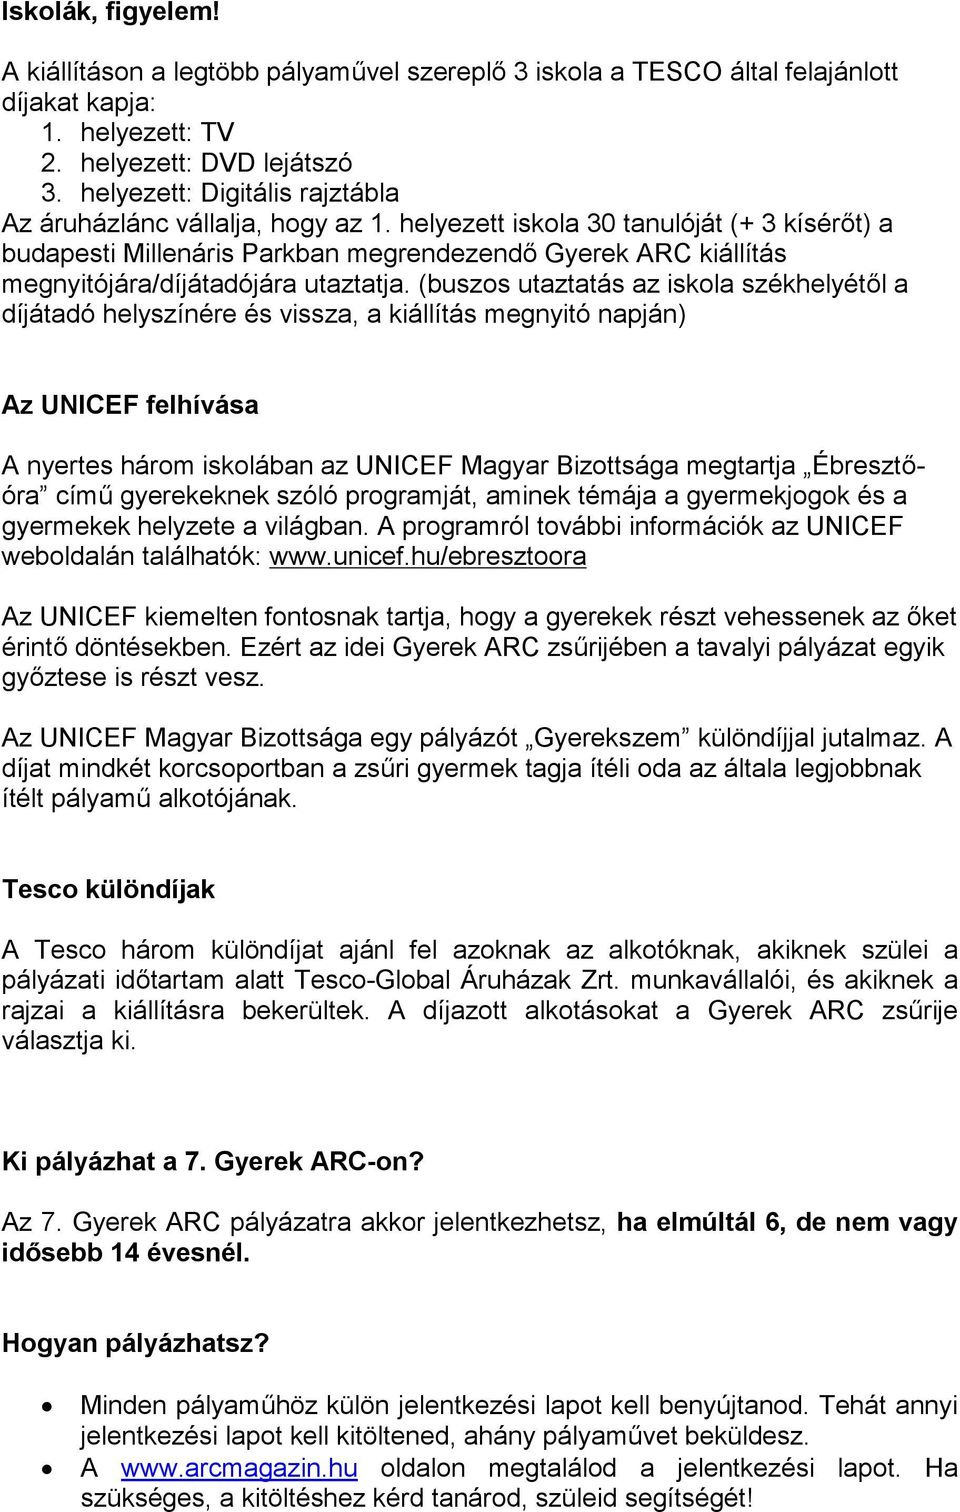 ITT VAGYOK, RAGYOGOK! - PDF Ingyenes letöltés